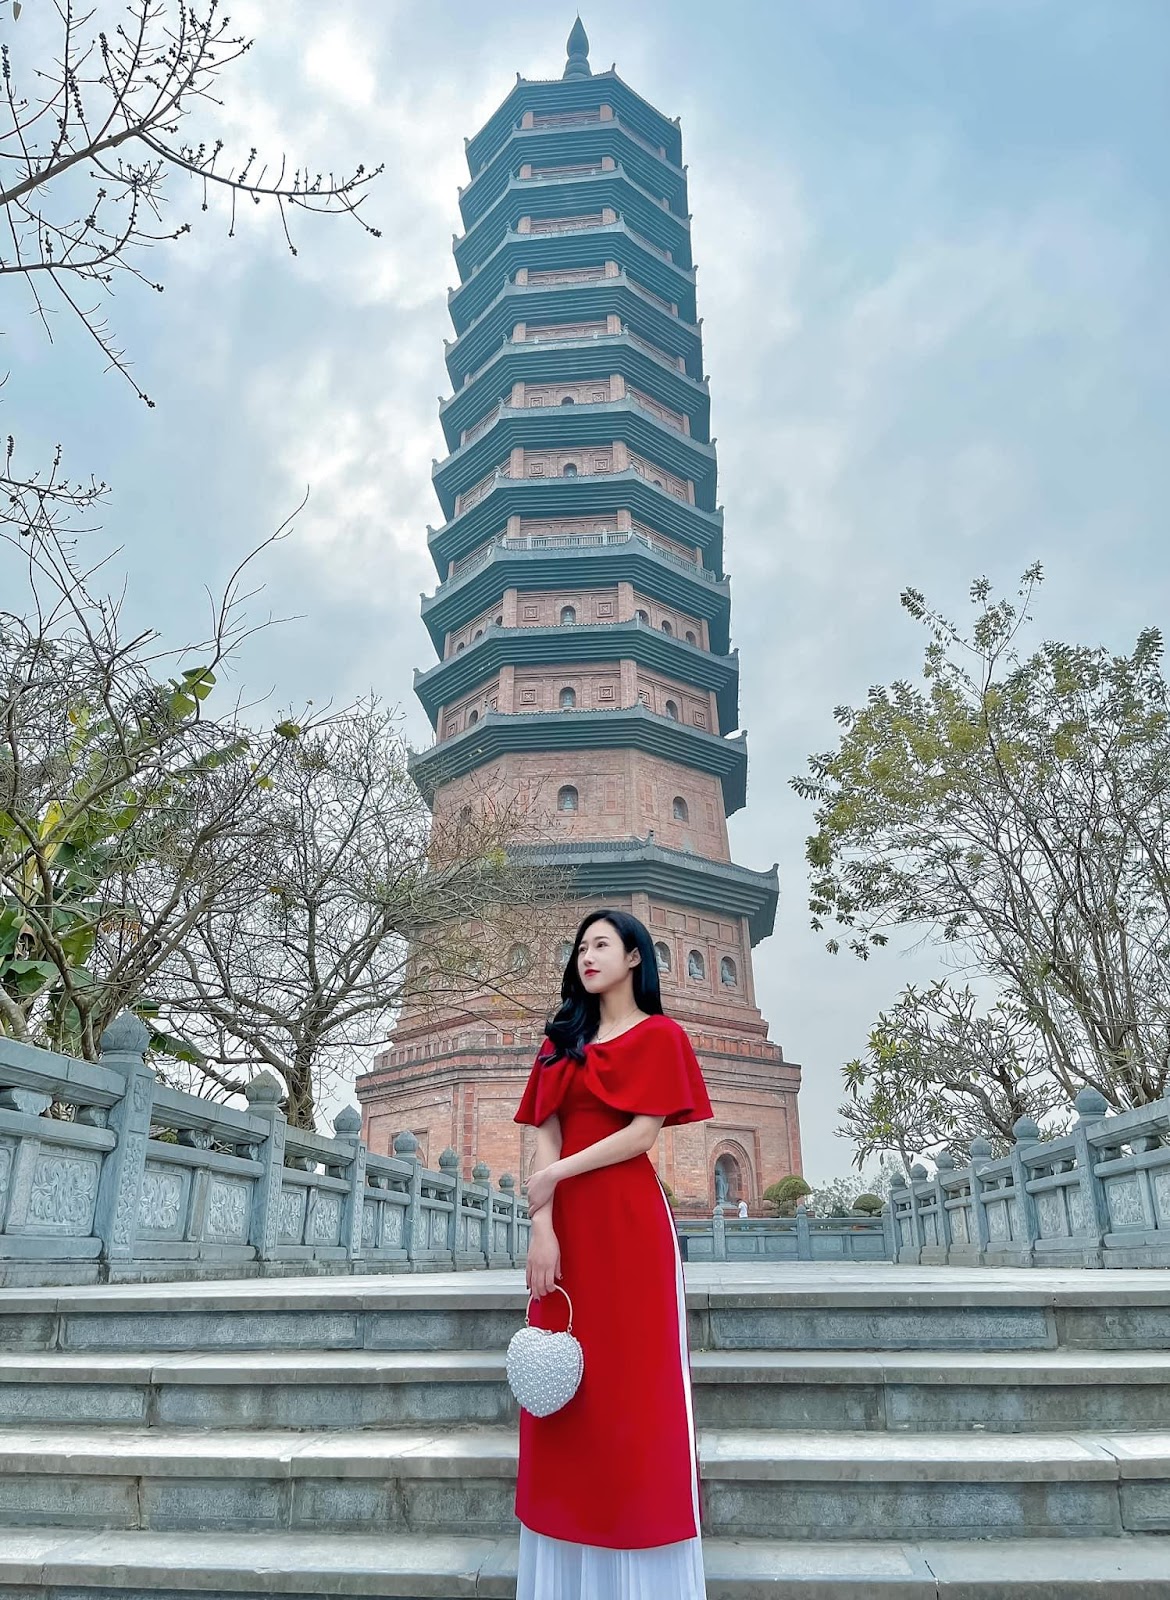 Hành hương vãn cảnh ở ngôi chùa giữ nhiều kỷ lục nhất Việt Nam - 12